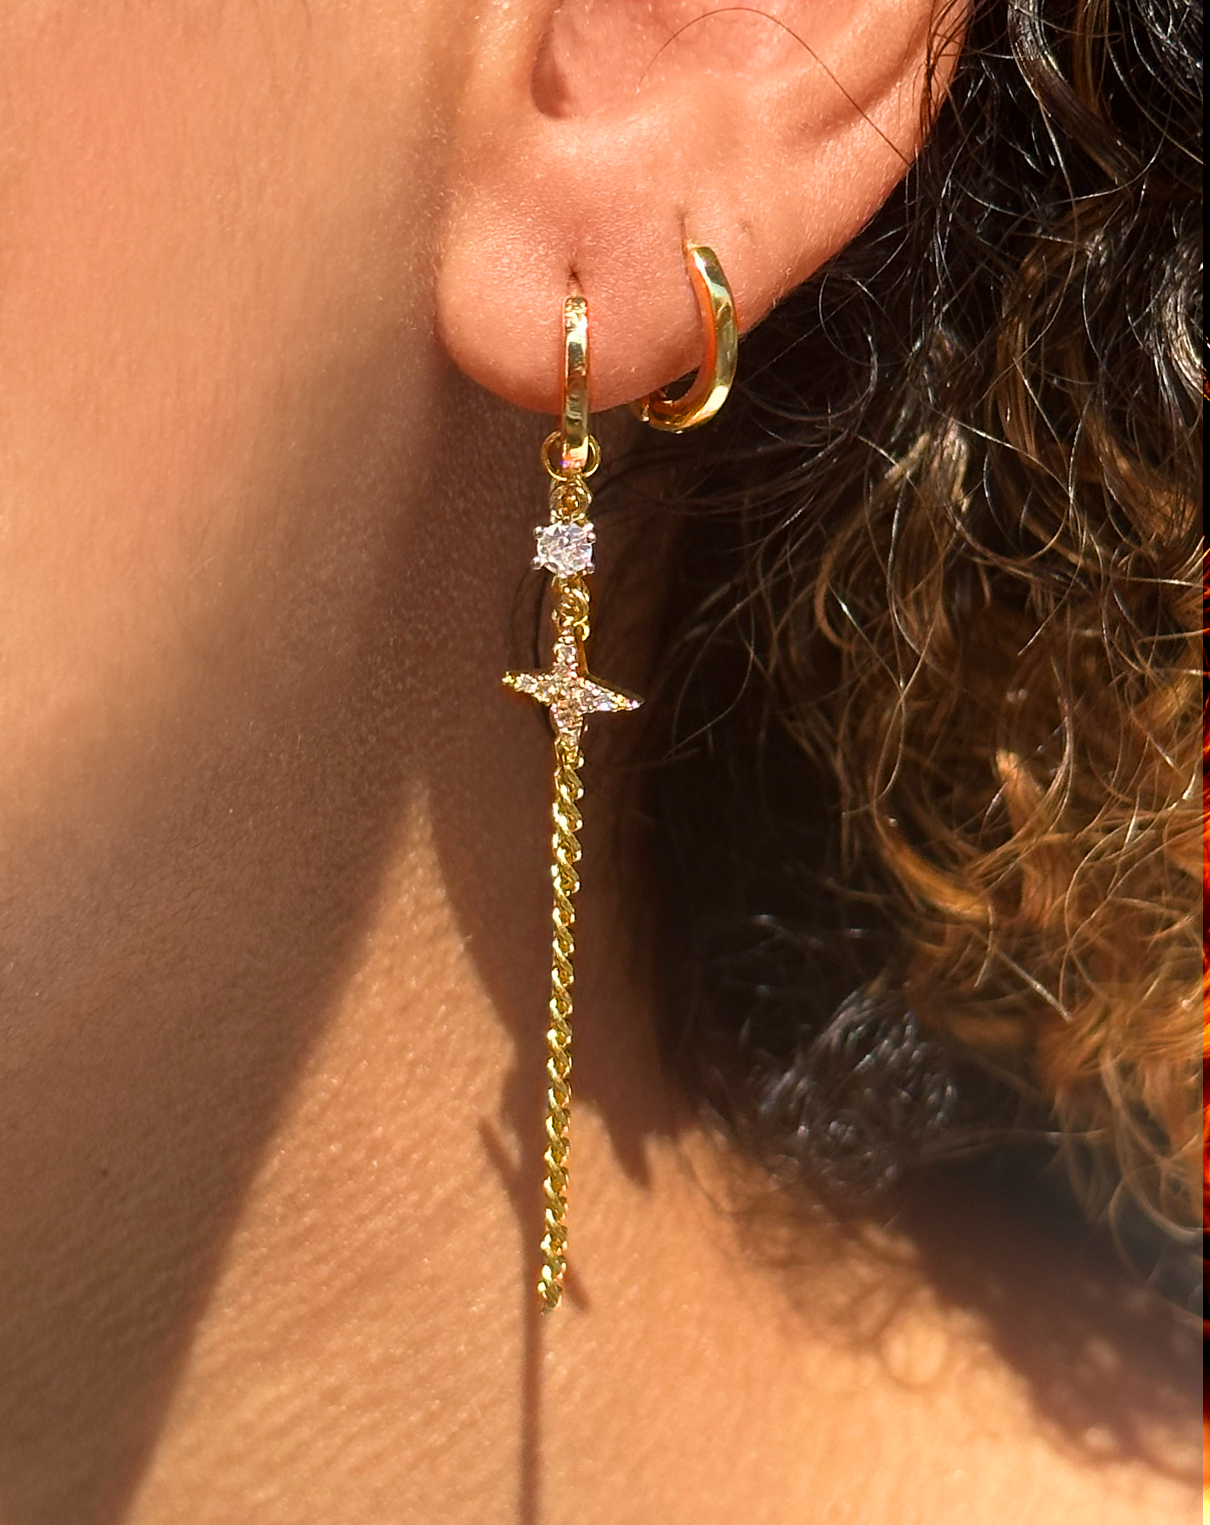 Boucle d'oreille pendentif étoile + chaine  accrochée à une oreille